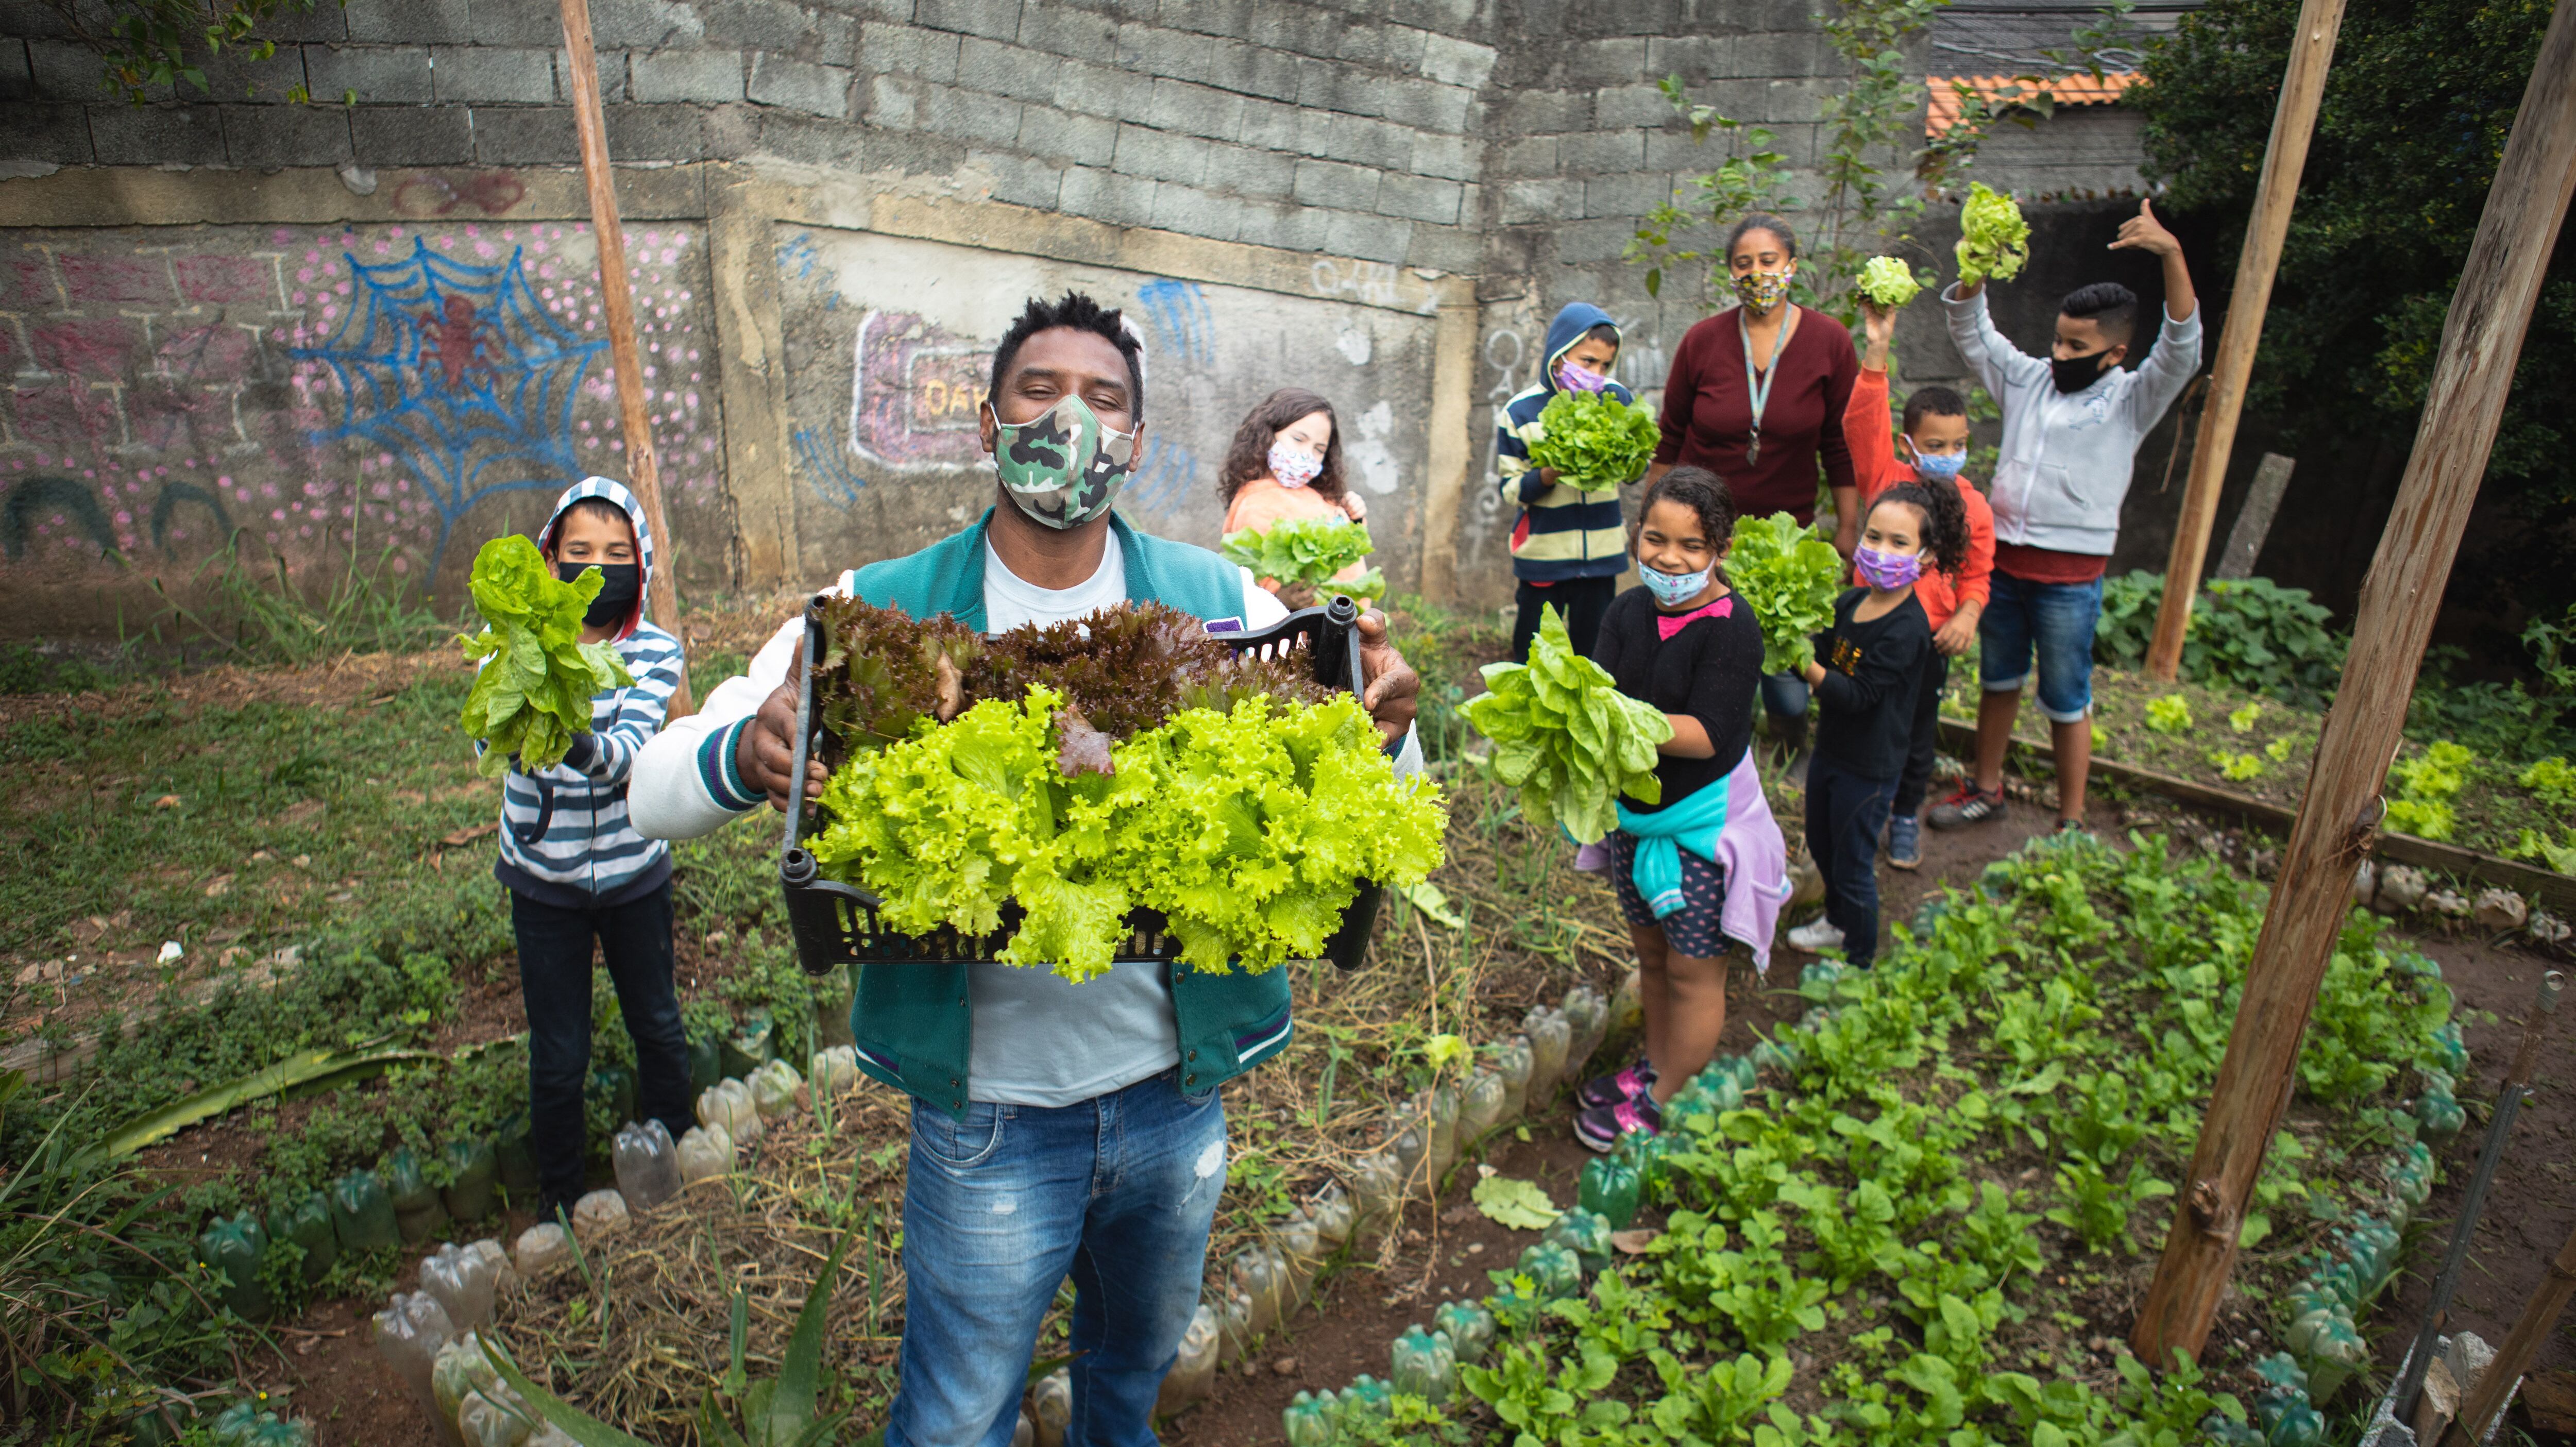  Wagner Golçaves Ramalho, criador do Prato Verde Sustentável, com crianças e adolescentes atendidos pela ONG na horta do projeto.